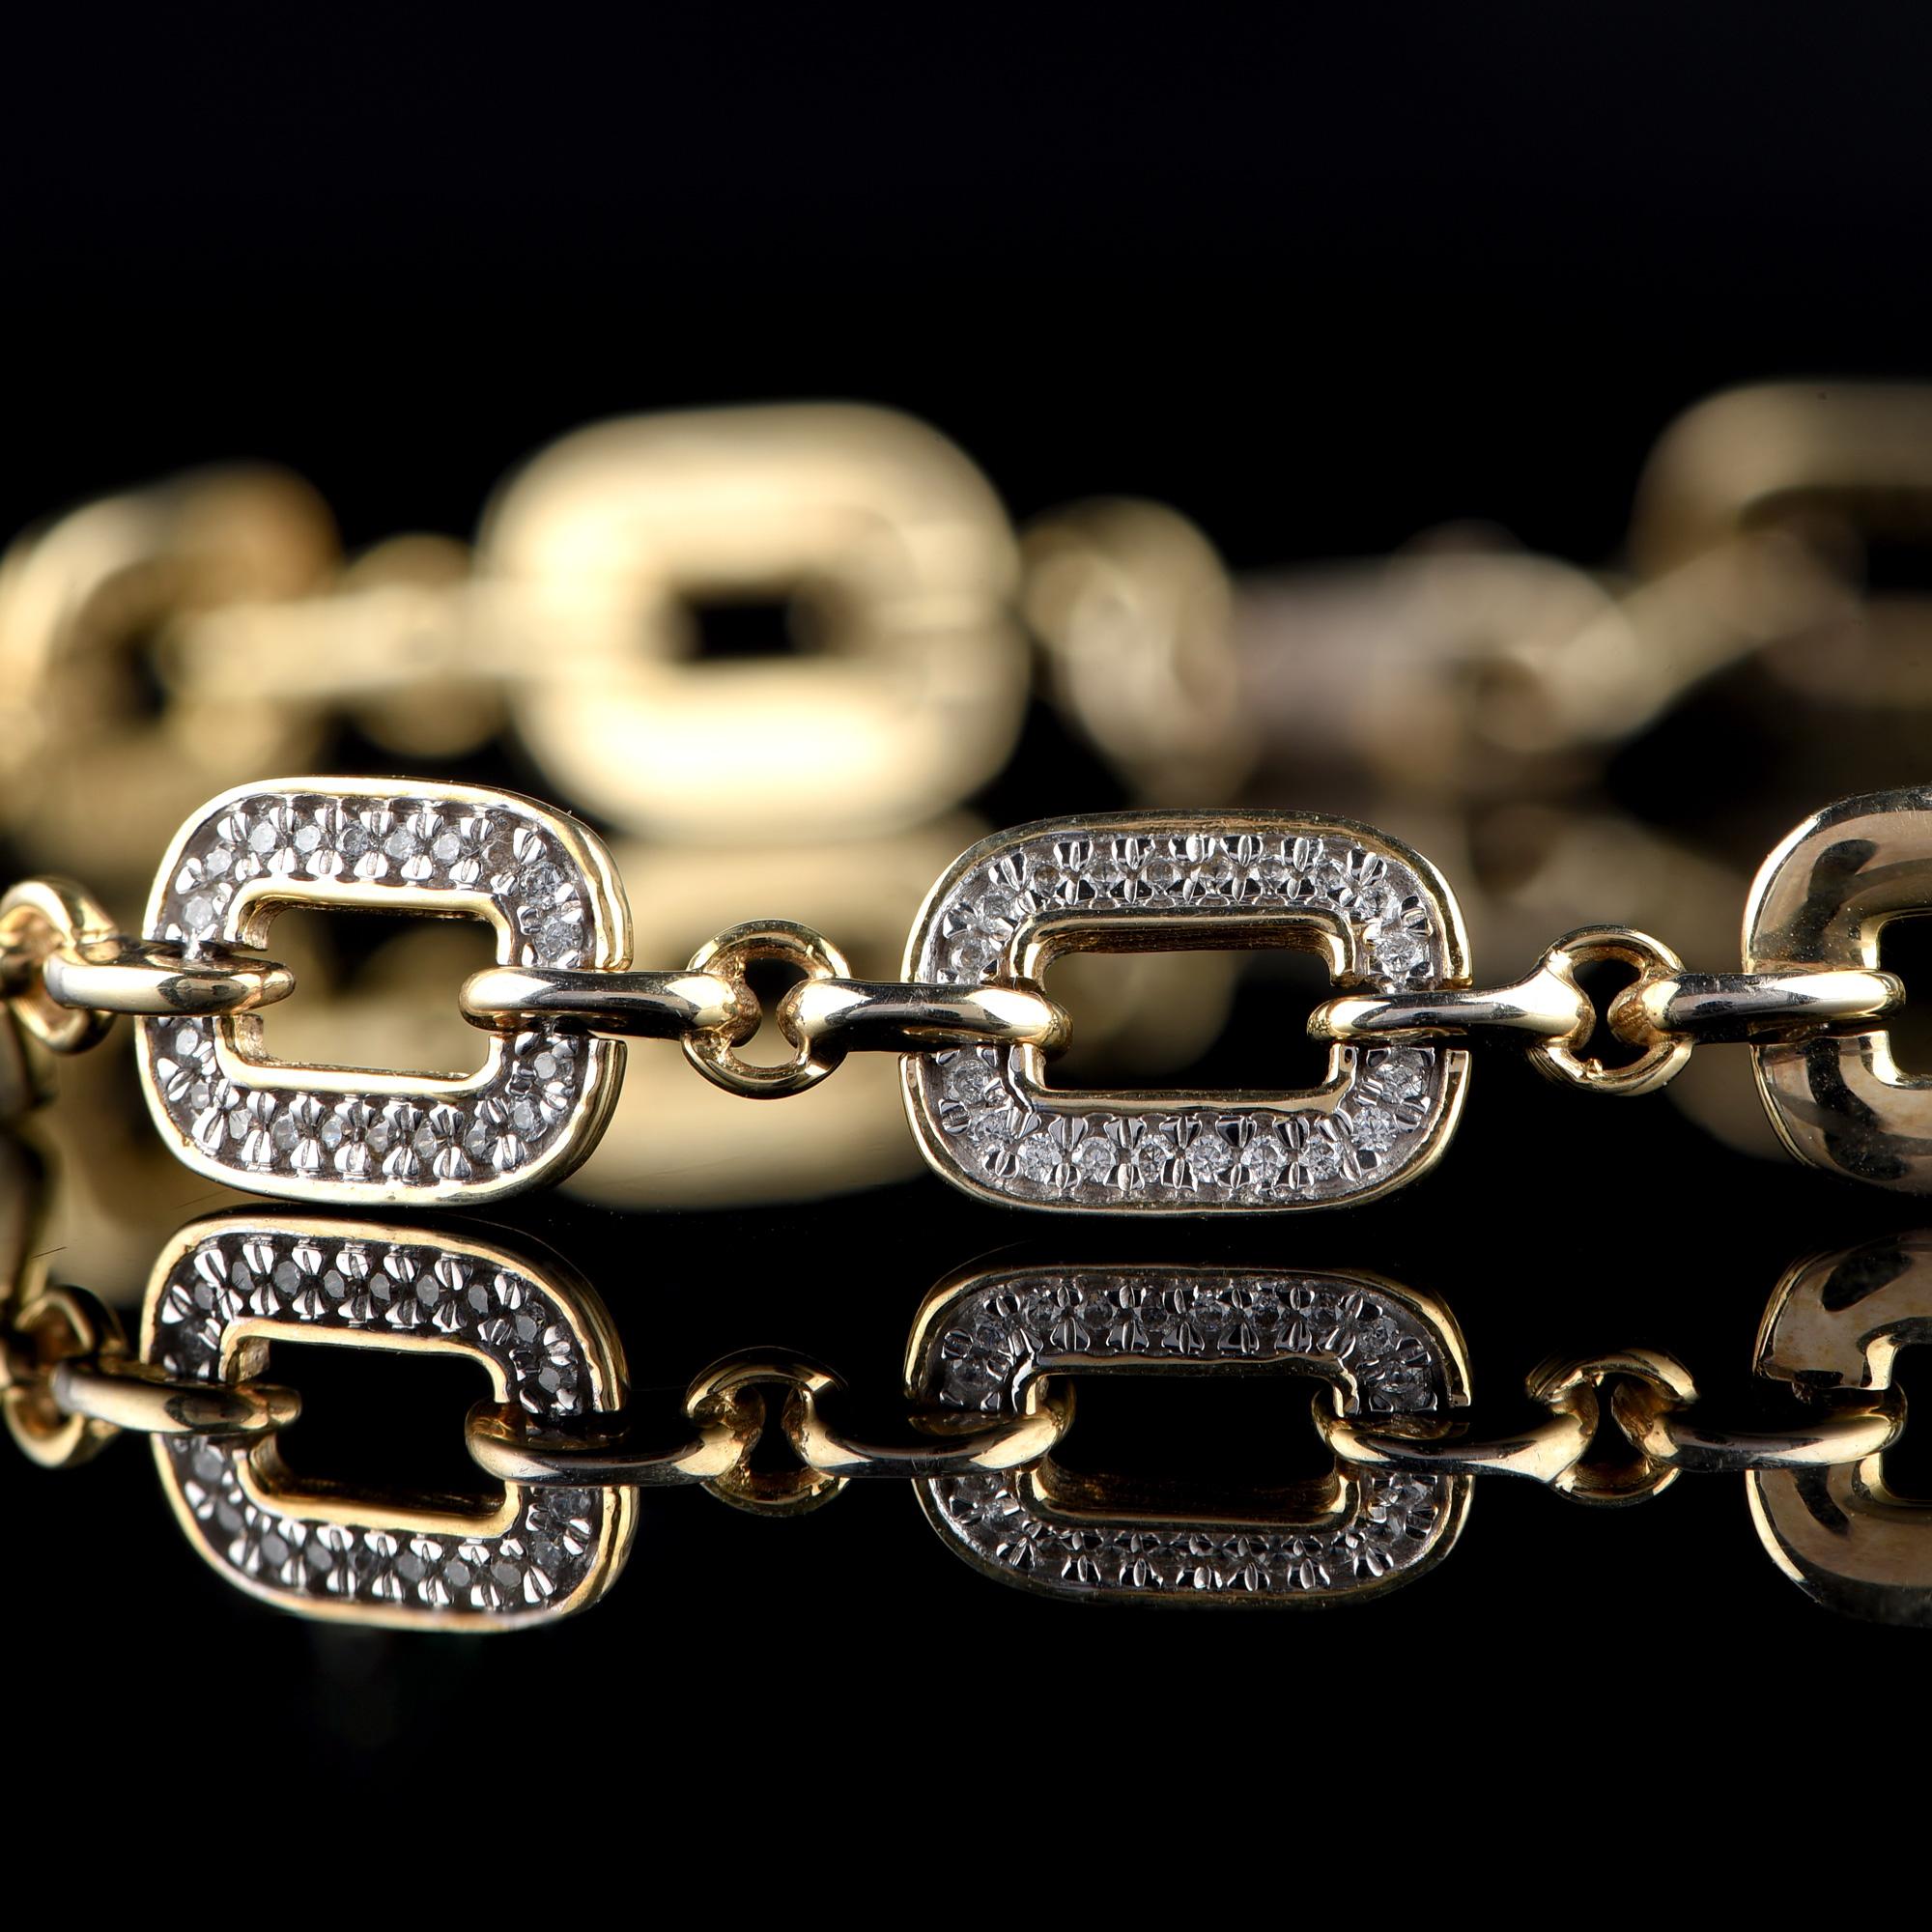 Das exquisite Design dieses diamantenen Gliederarmbands ist mit 160 Diamanten im Brillantschliff in Zackenfassung besetzt und aus 18 Karat Gelbgold gefertigt. Die Diamanten sind in der Farbe H-I und in der Reinheit I2 eingestuft. 

Die Metallfarbe